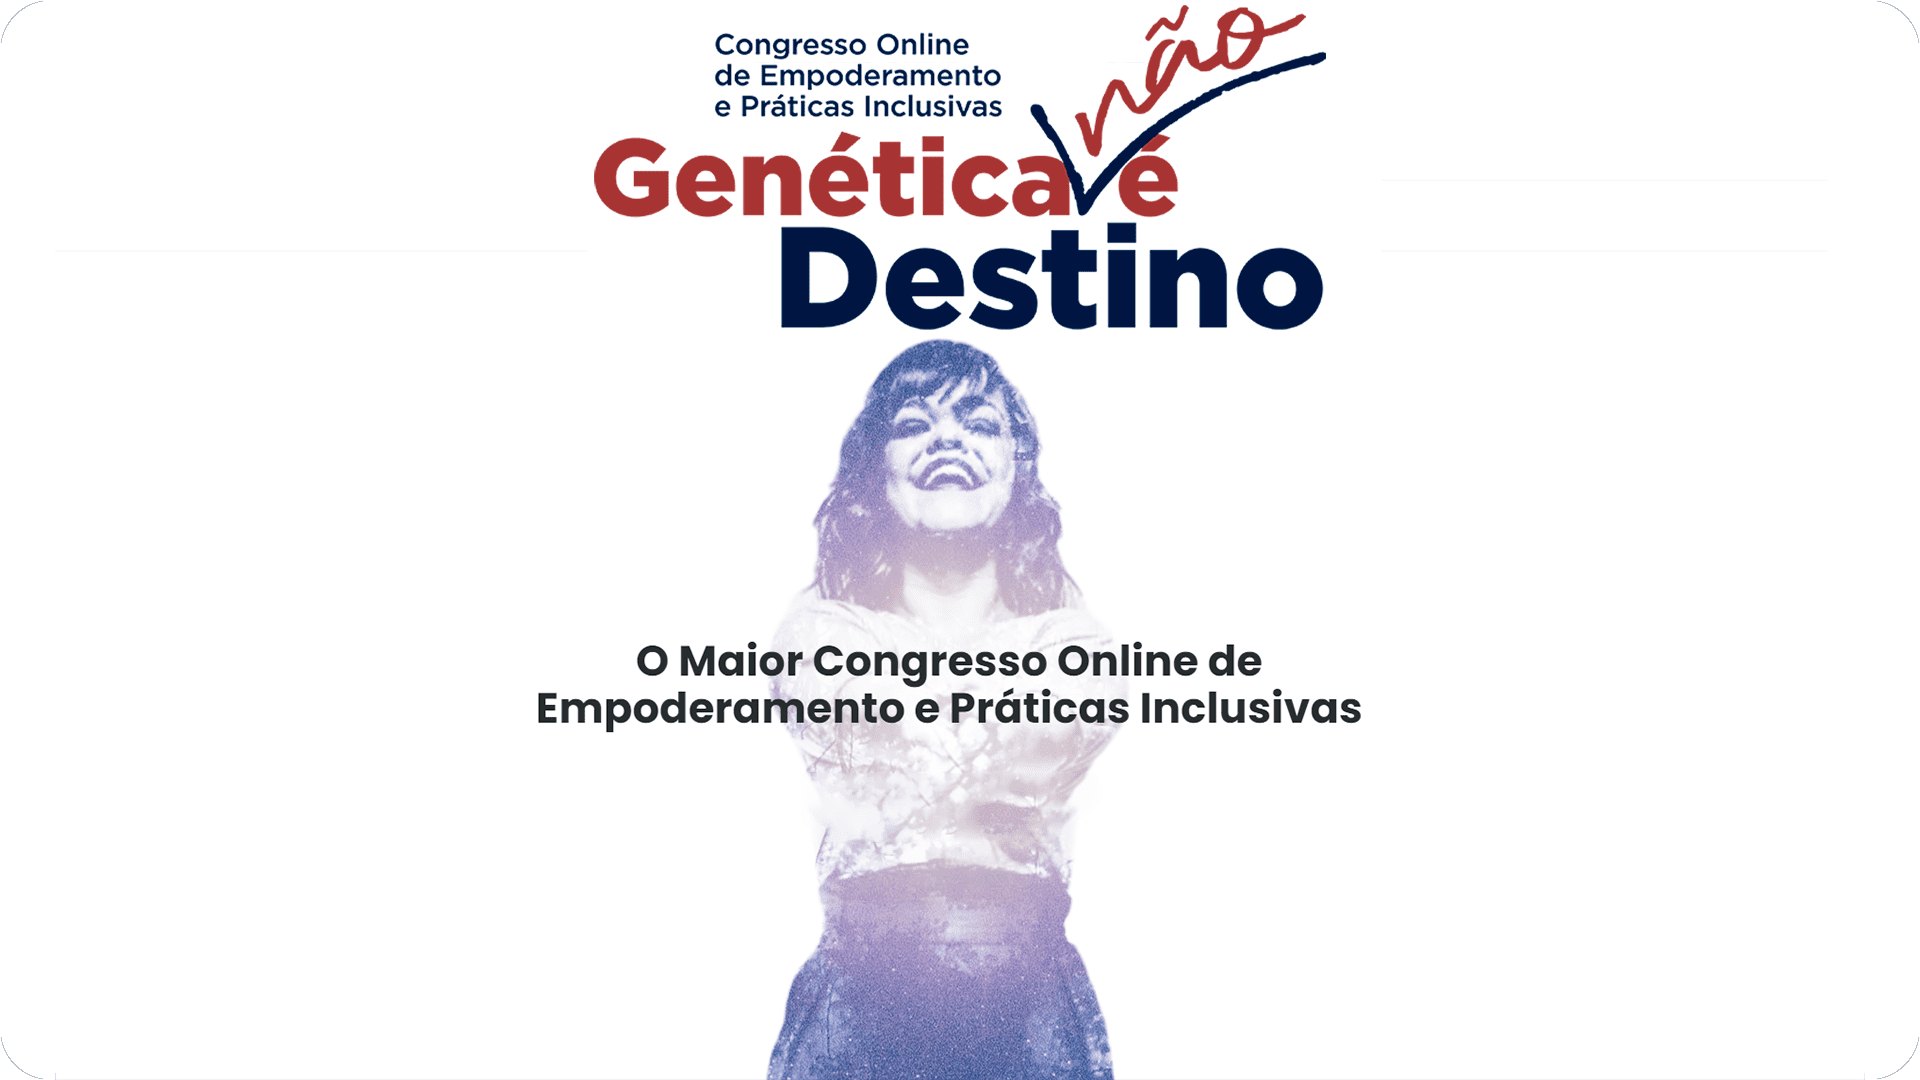 Imagem é um print da tela do computador, no site do congresso Genética Não é destino